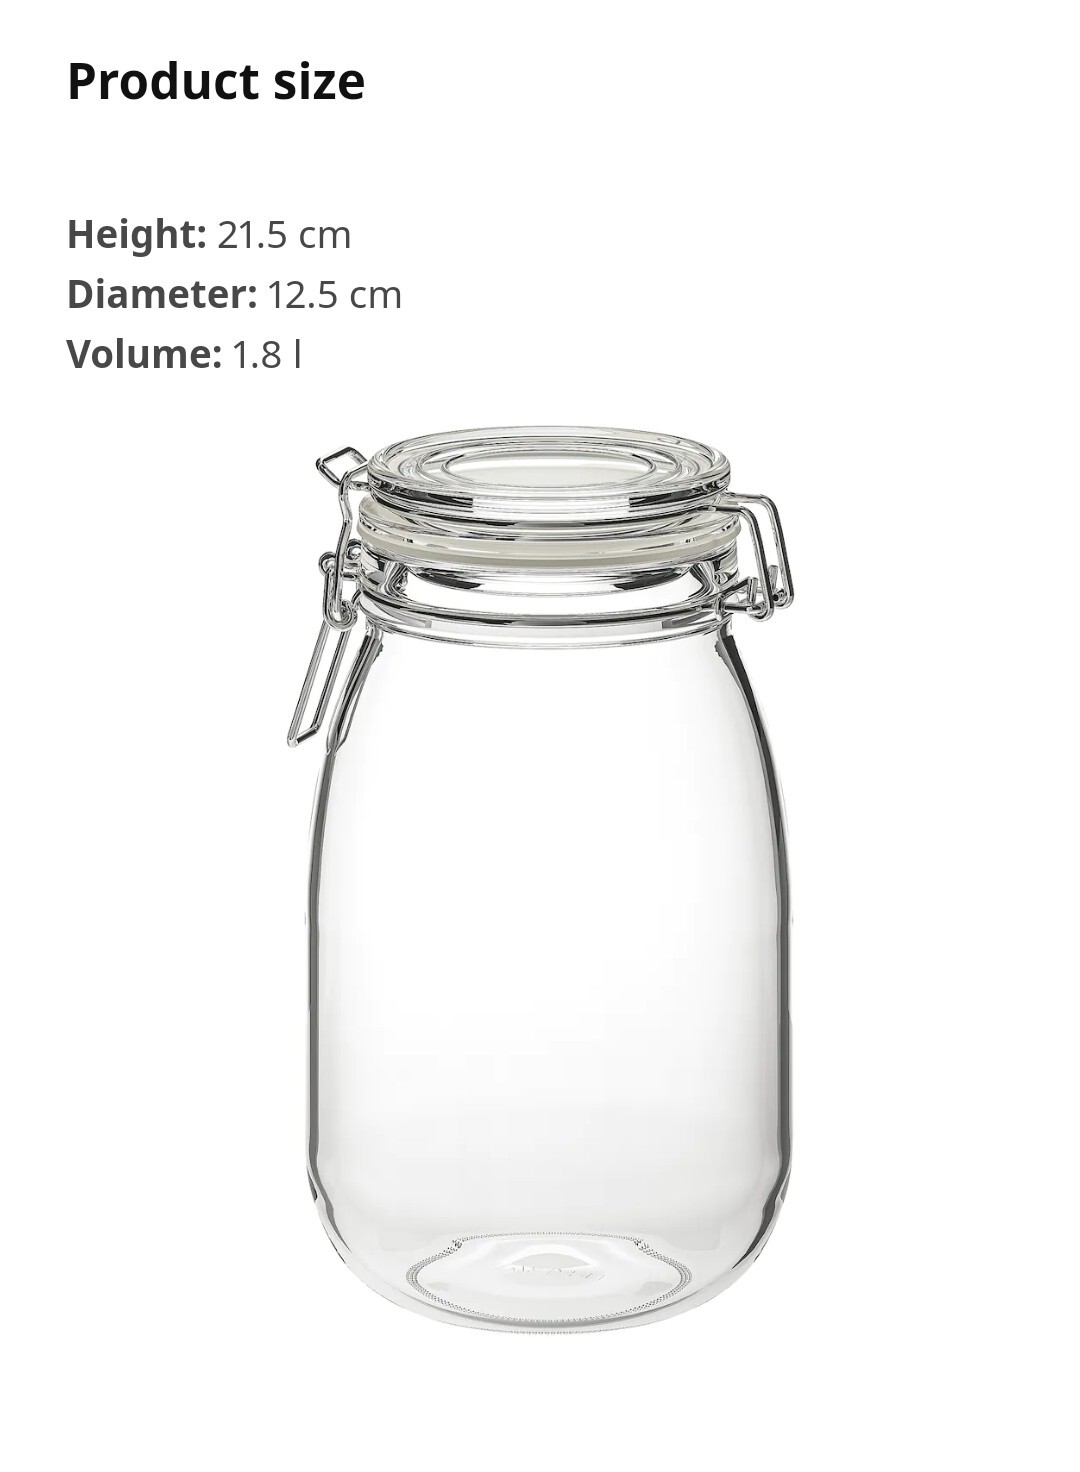  بانکه و ظرف نگهداری کاملا وکیوم ایکیا با در کاملا وکیوم پرسی با در کلیپسی. Ikea korken در حجم ۱.۸ لیتر در فروشگاه ایکیلا 